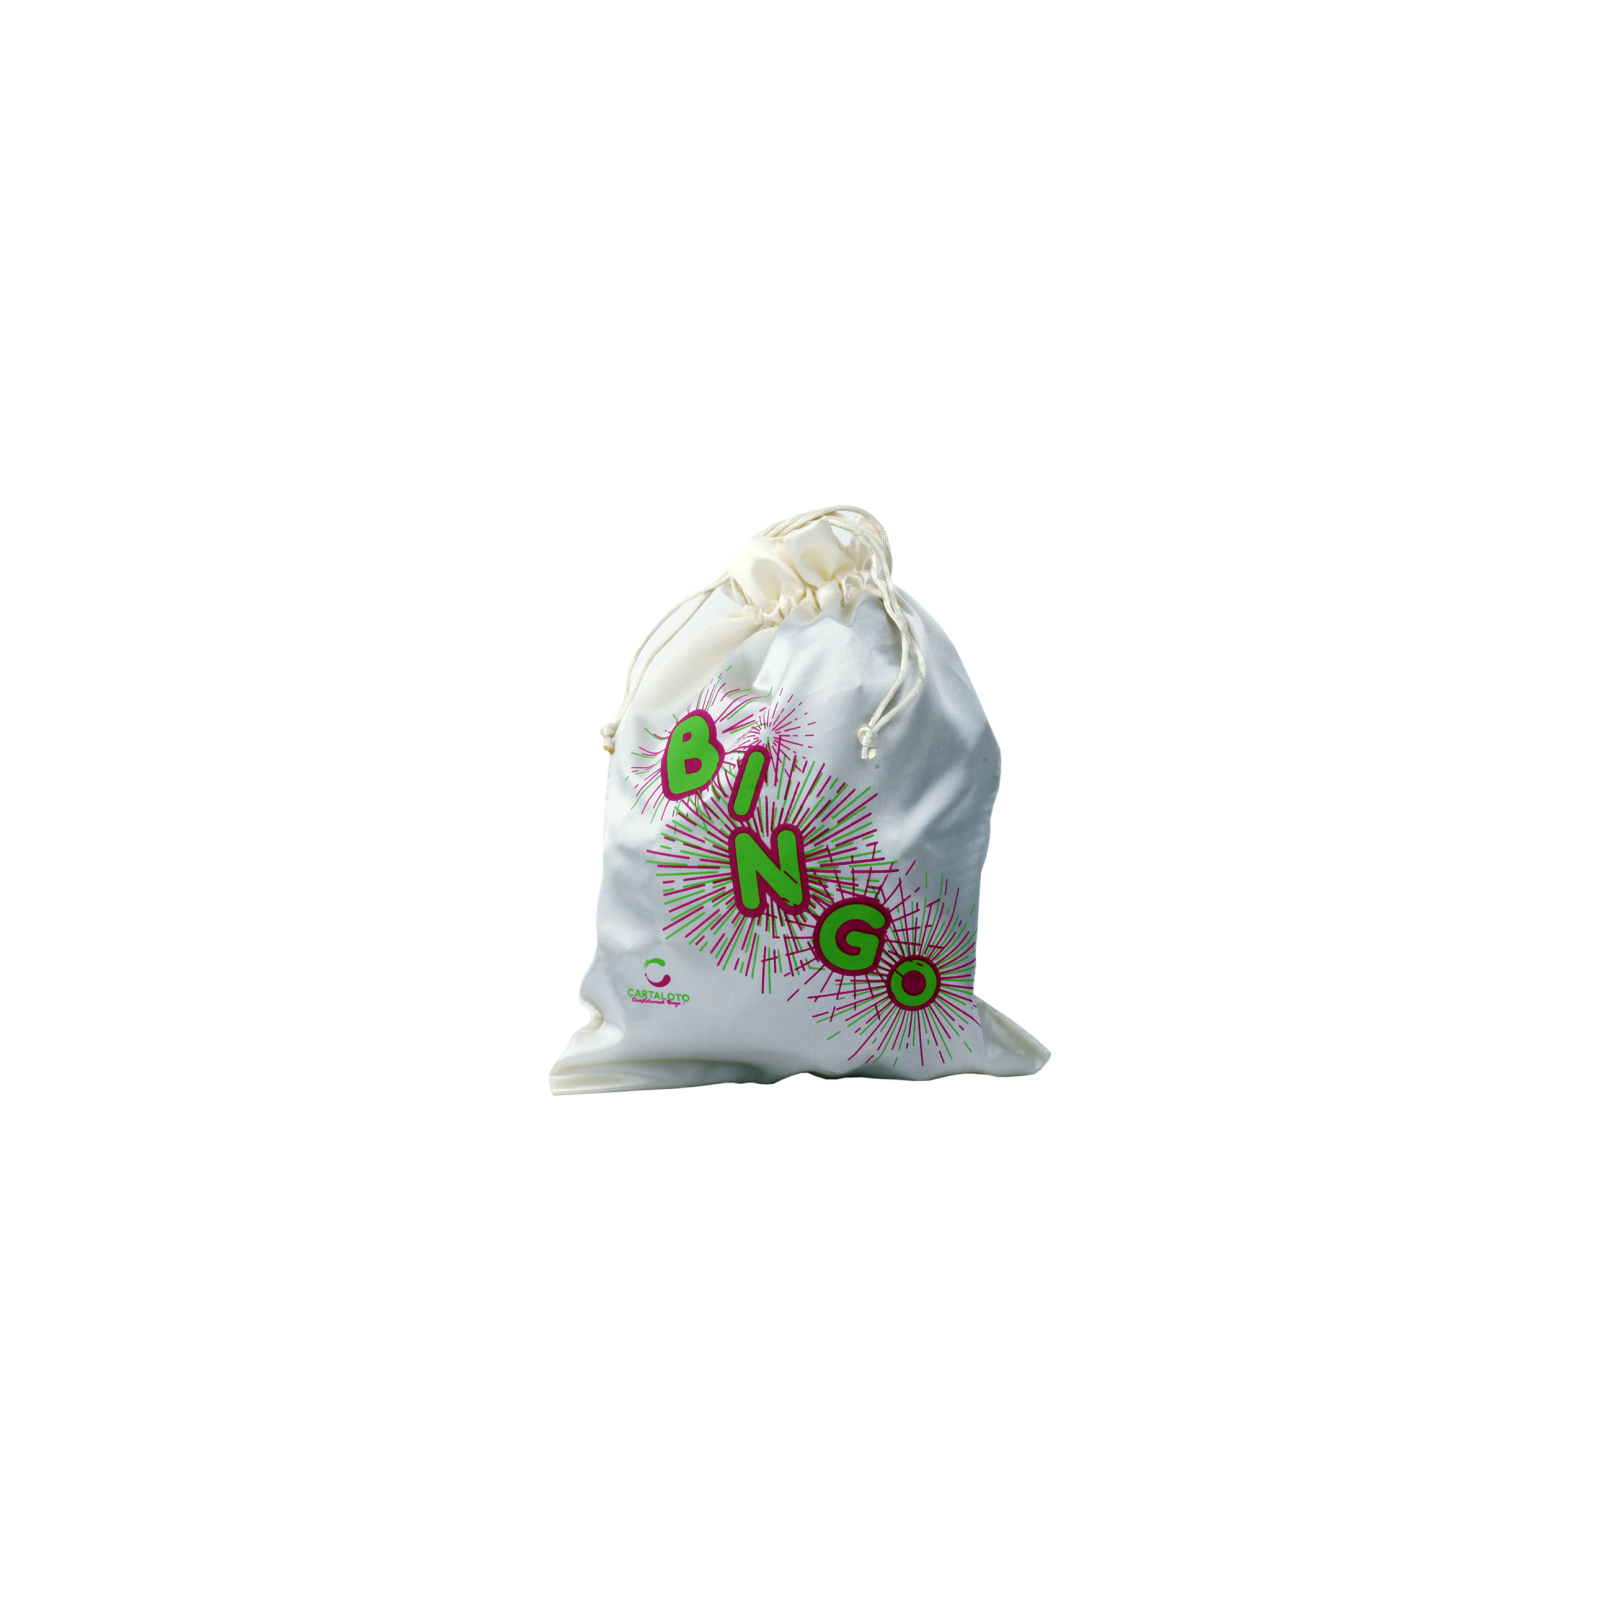 90 jetons de loto en hêtre + sac de tirage - Plastic Jeux